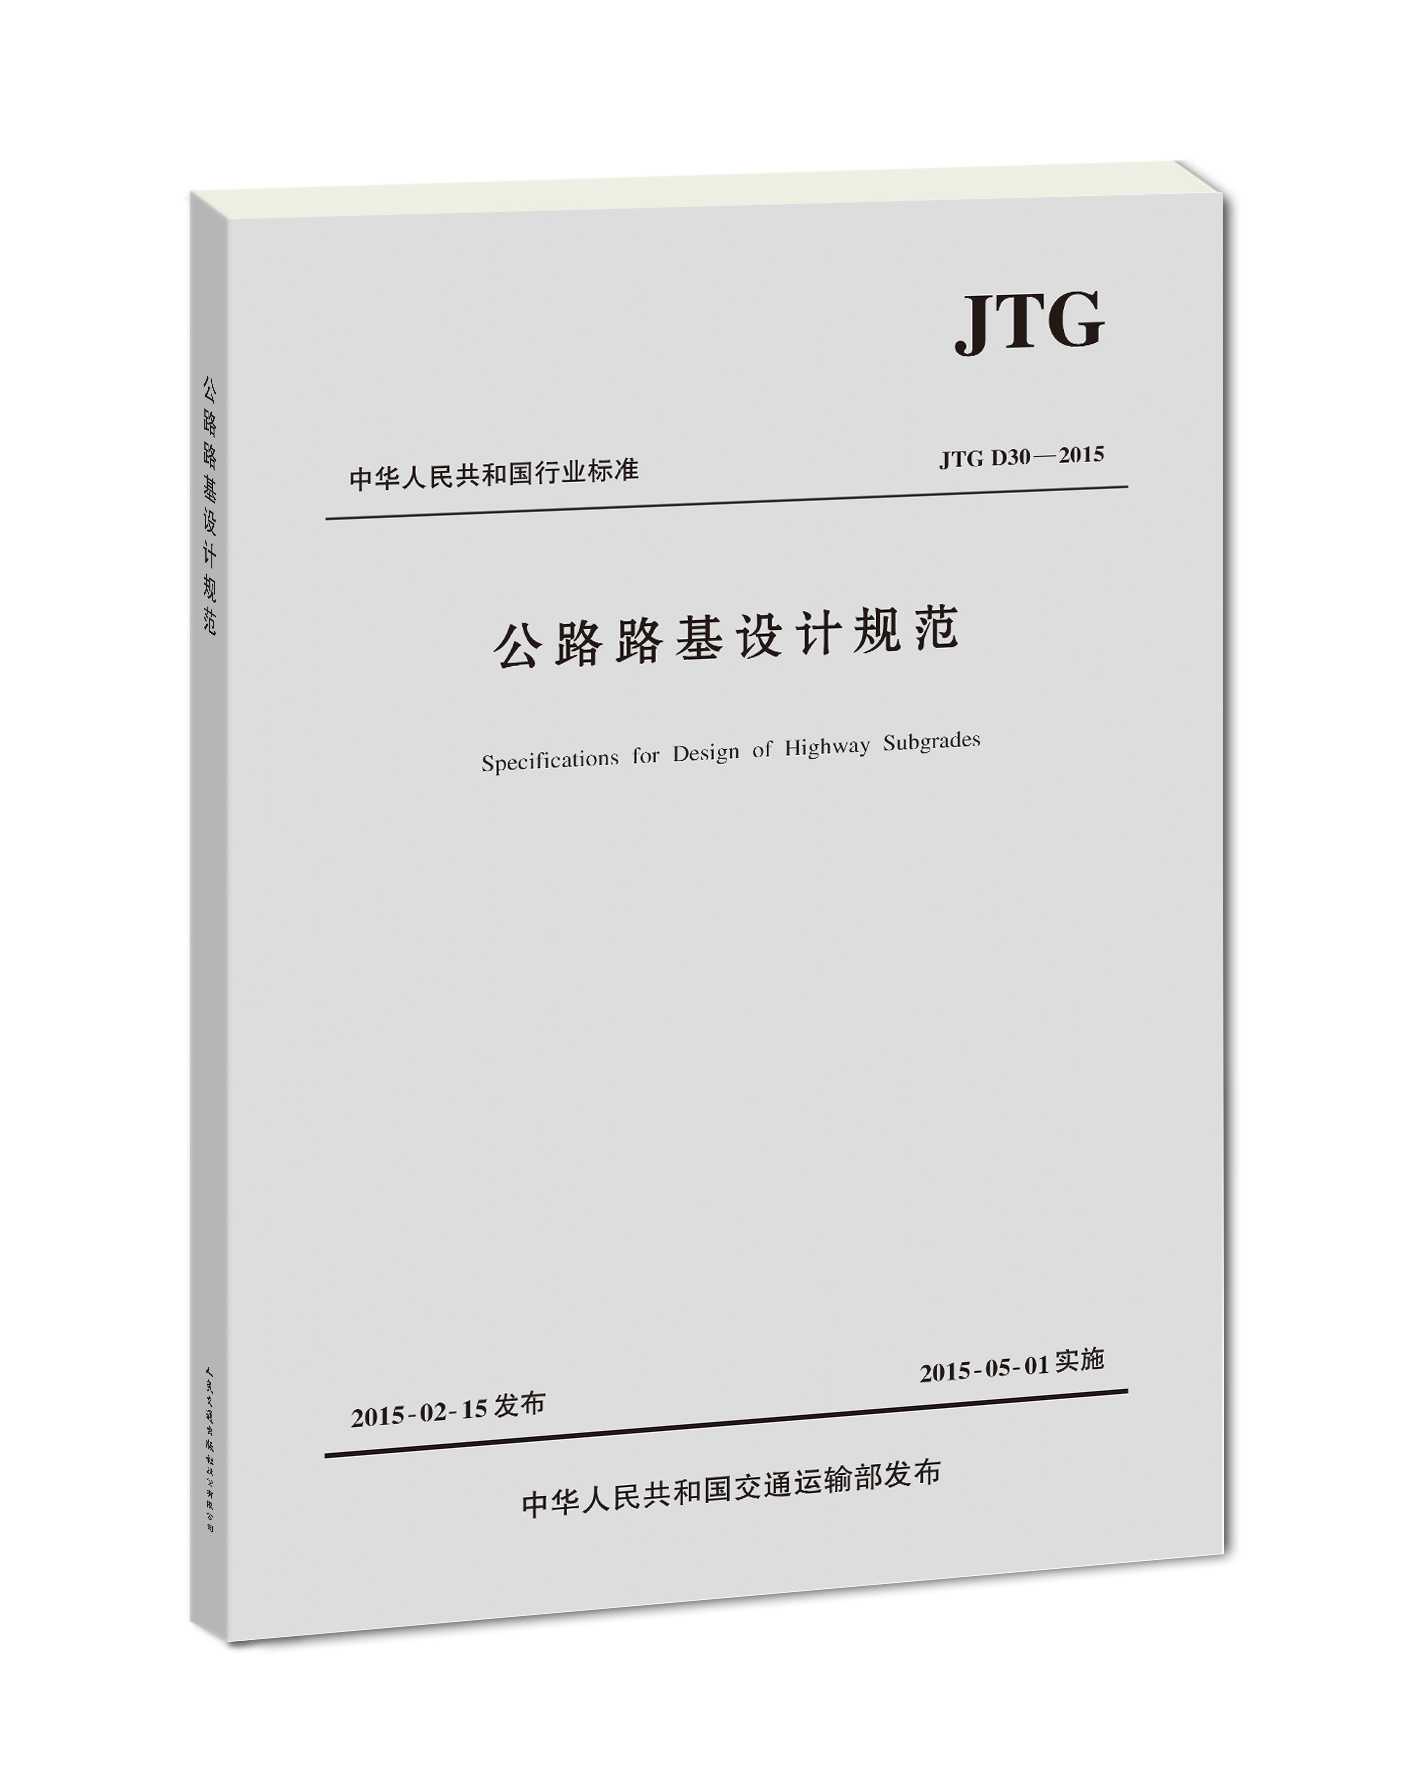 公路路基设计规范(JTG D30—2015)